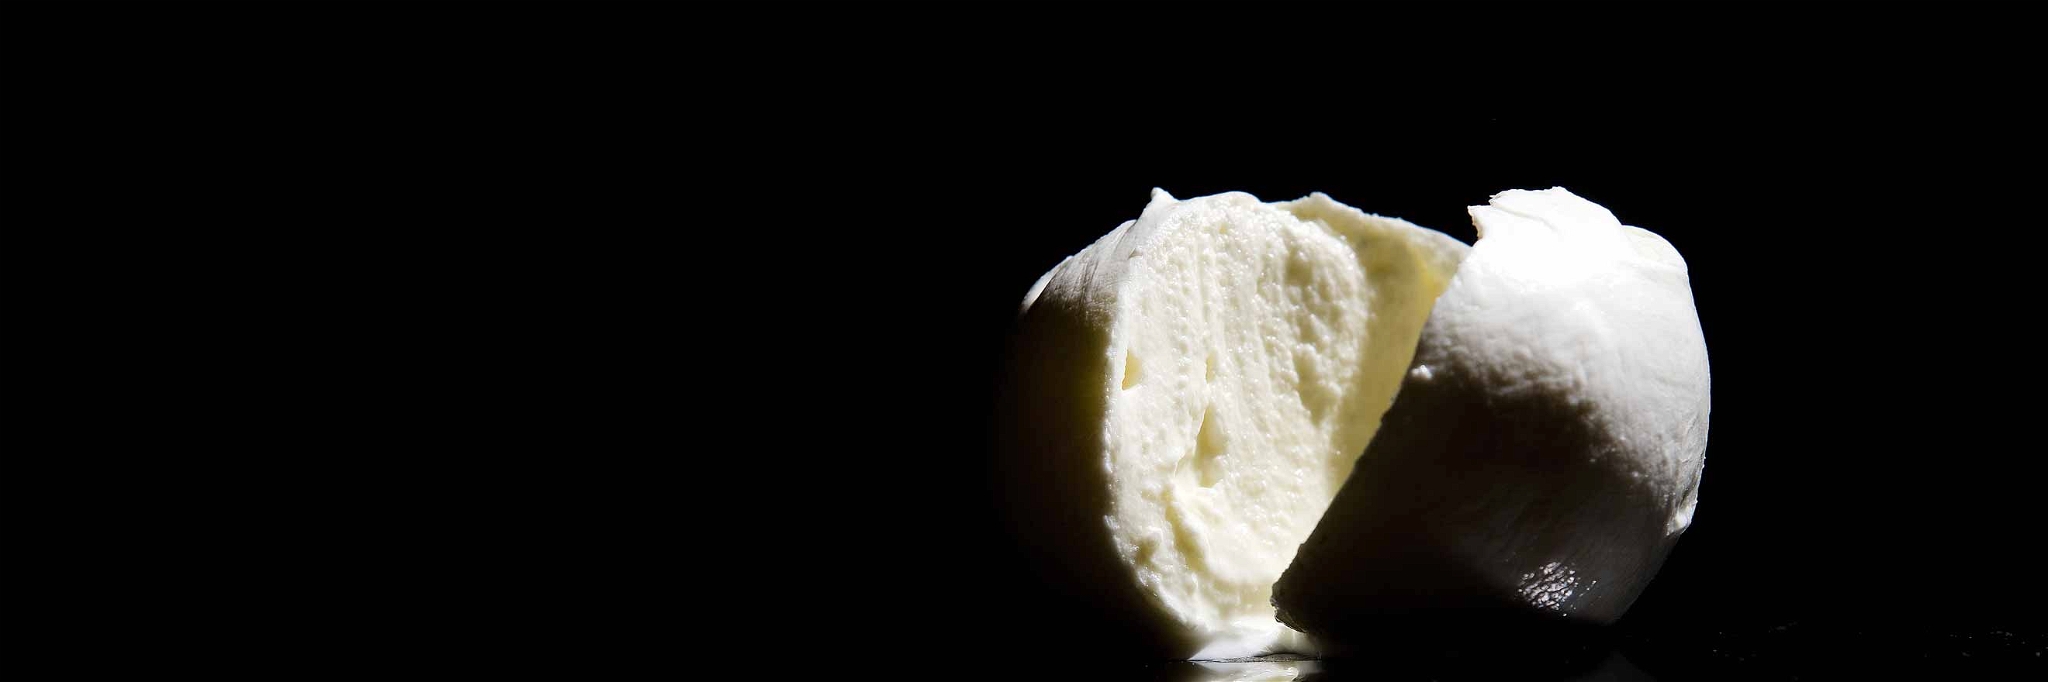 Schneidet man hochwertigen Büffelmozzarella auf, tritt ein wenig Flüssigkeit aus. »Der Käse verdrückt eine Träne«, sagen die Italiener dazu.